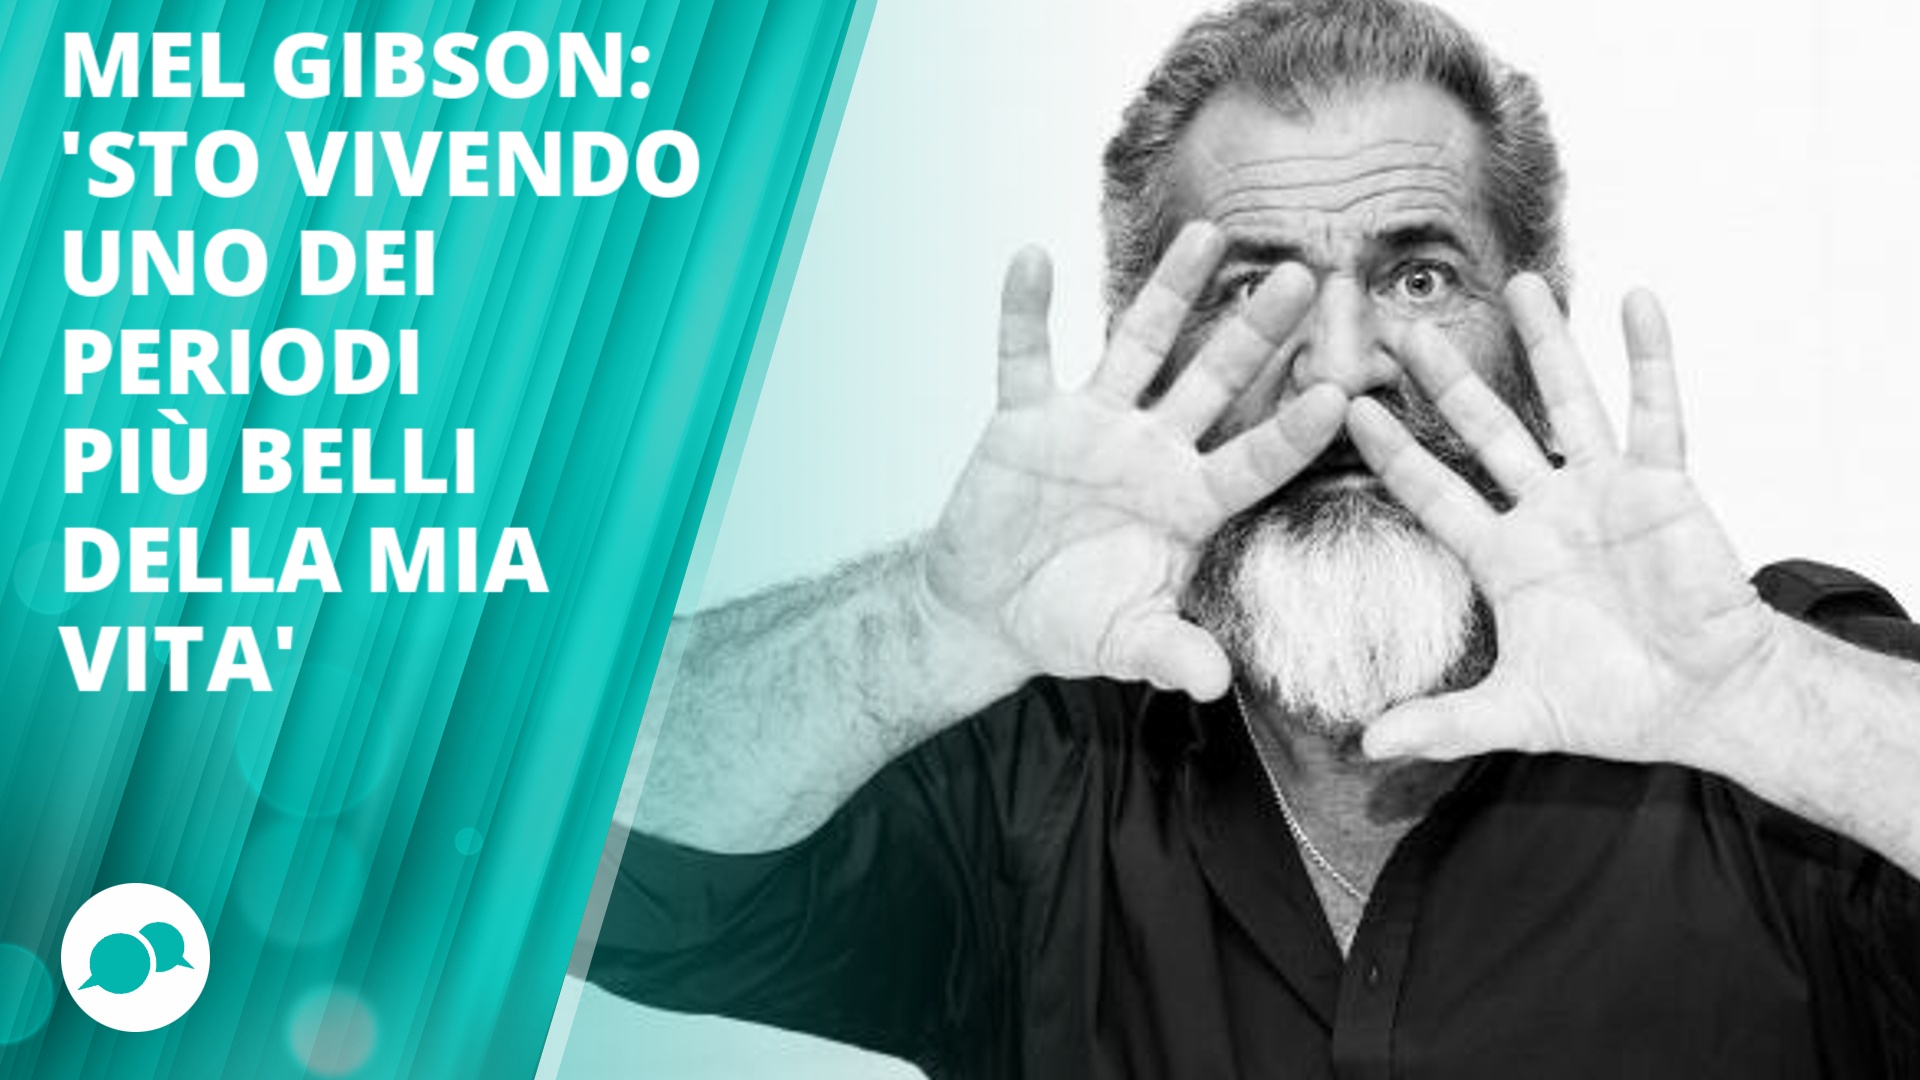 Mel Gibson, papa' per la nona volta a 60 anni